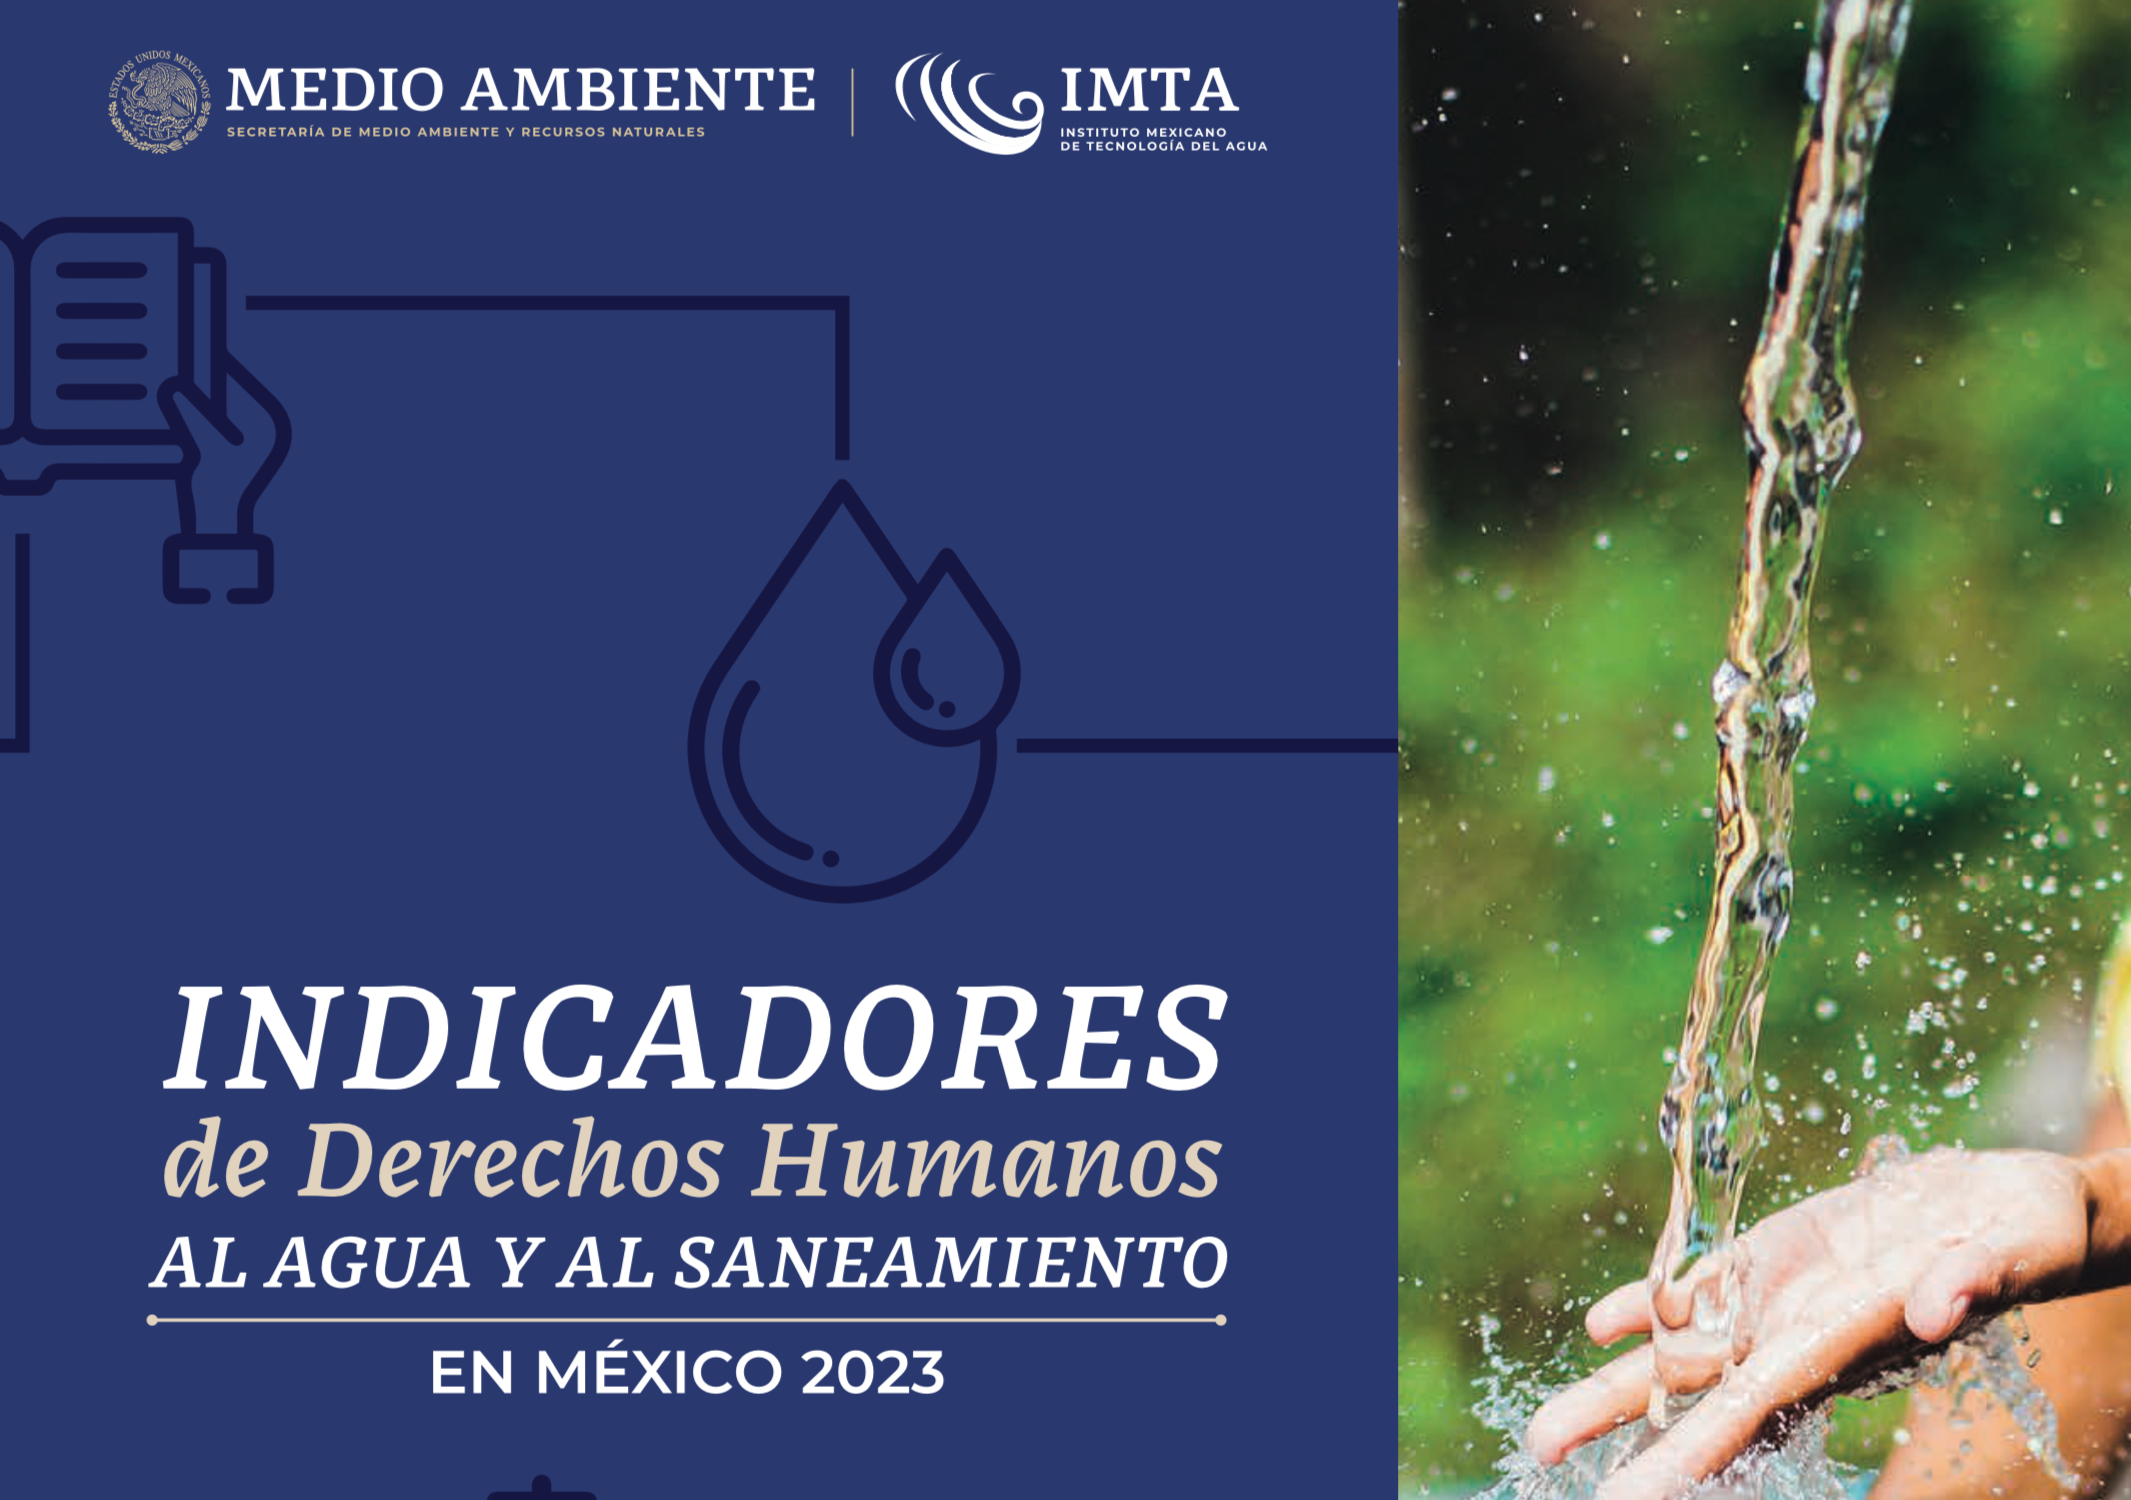 Indicadores de Derechos Humanos al Agua y al Saneamiento en México 2023 (IMTA)